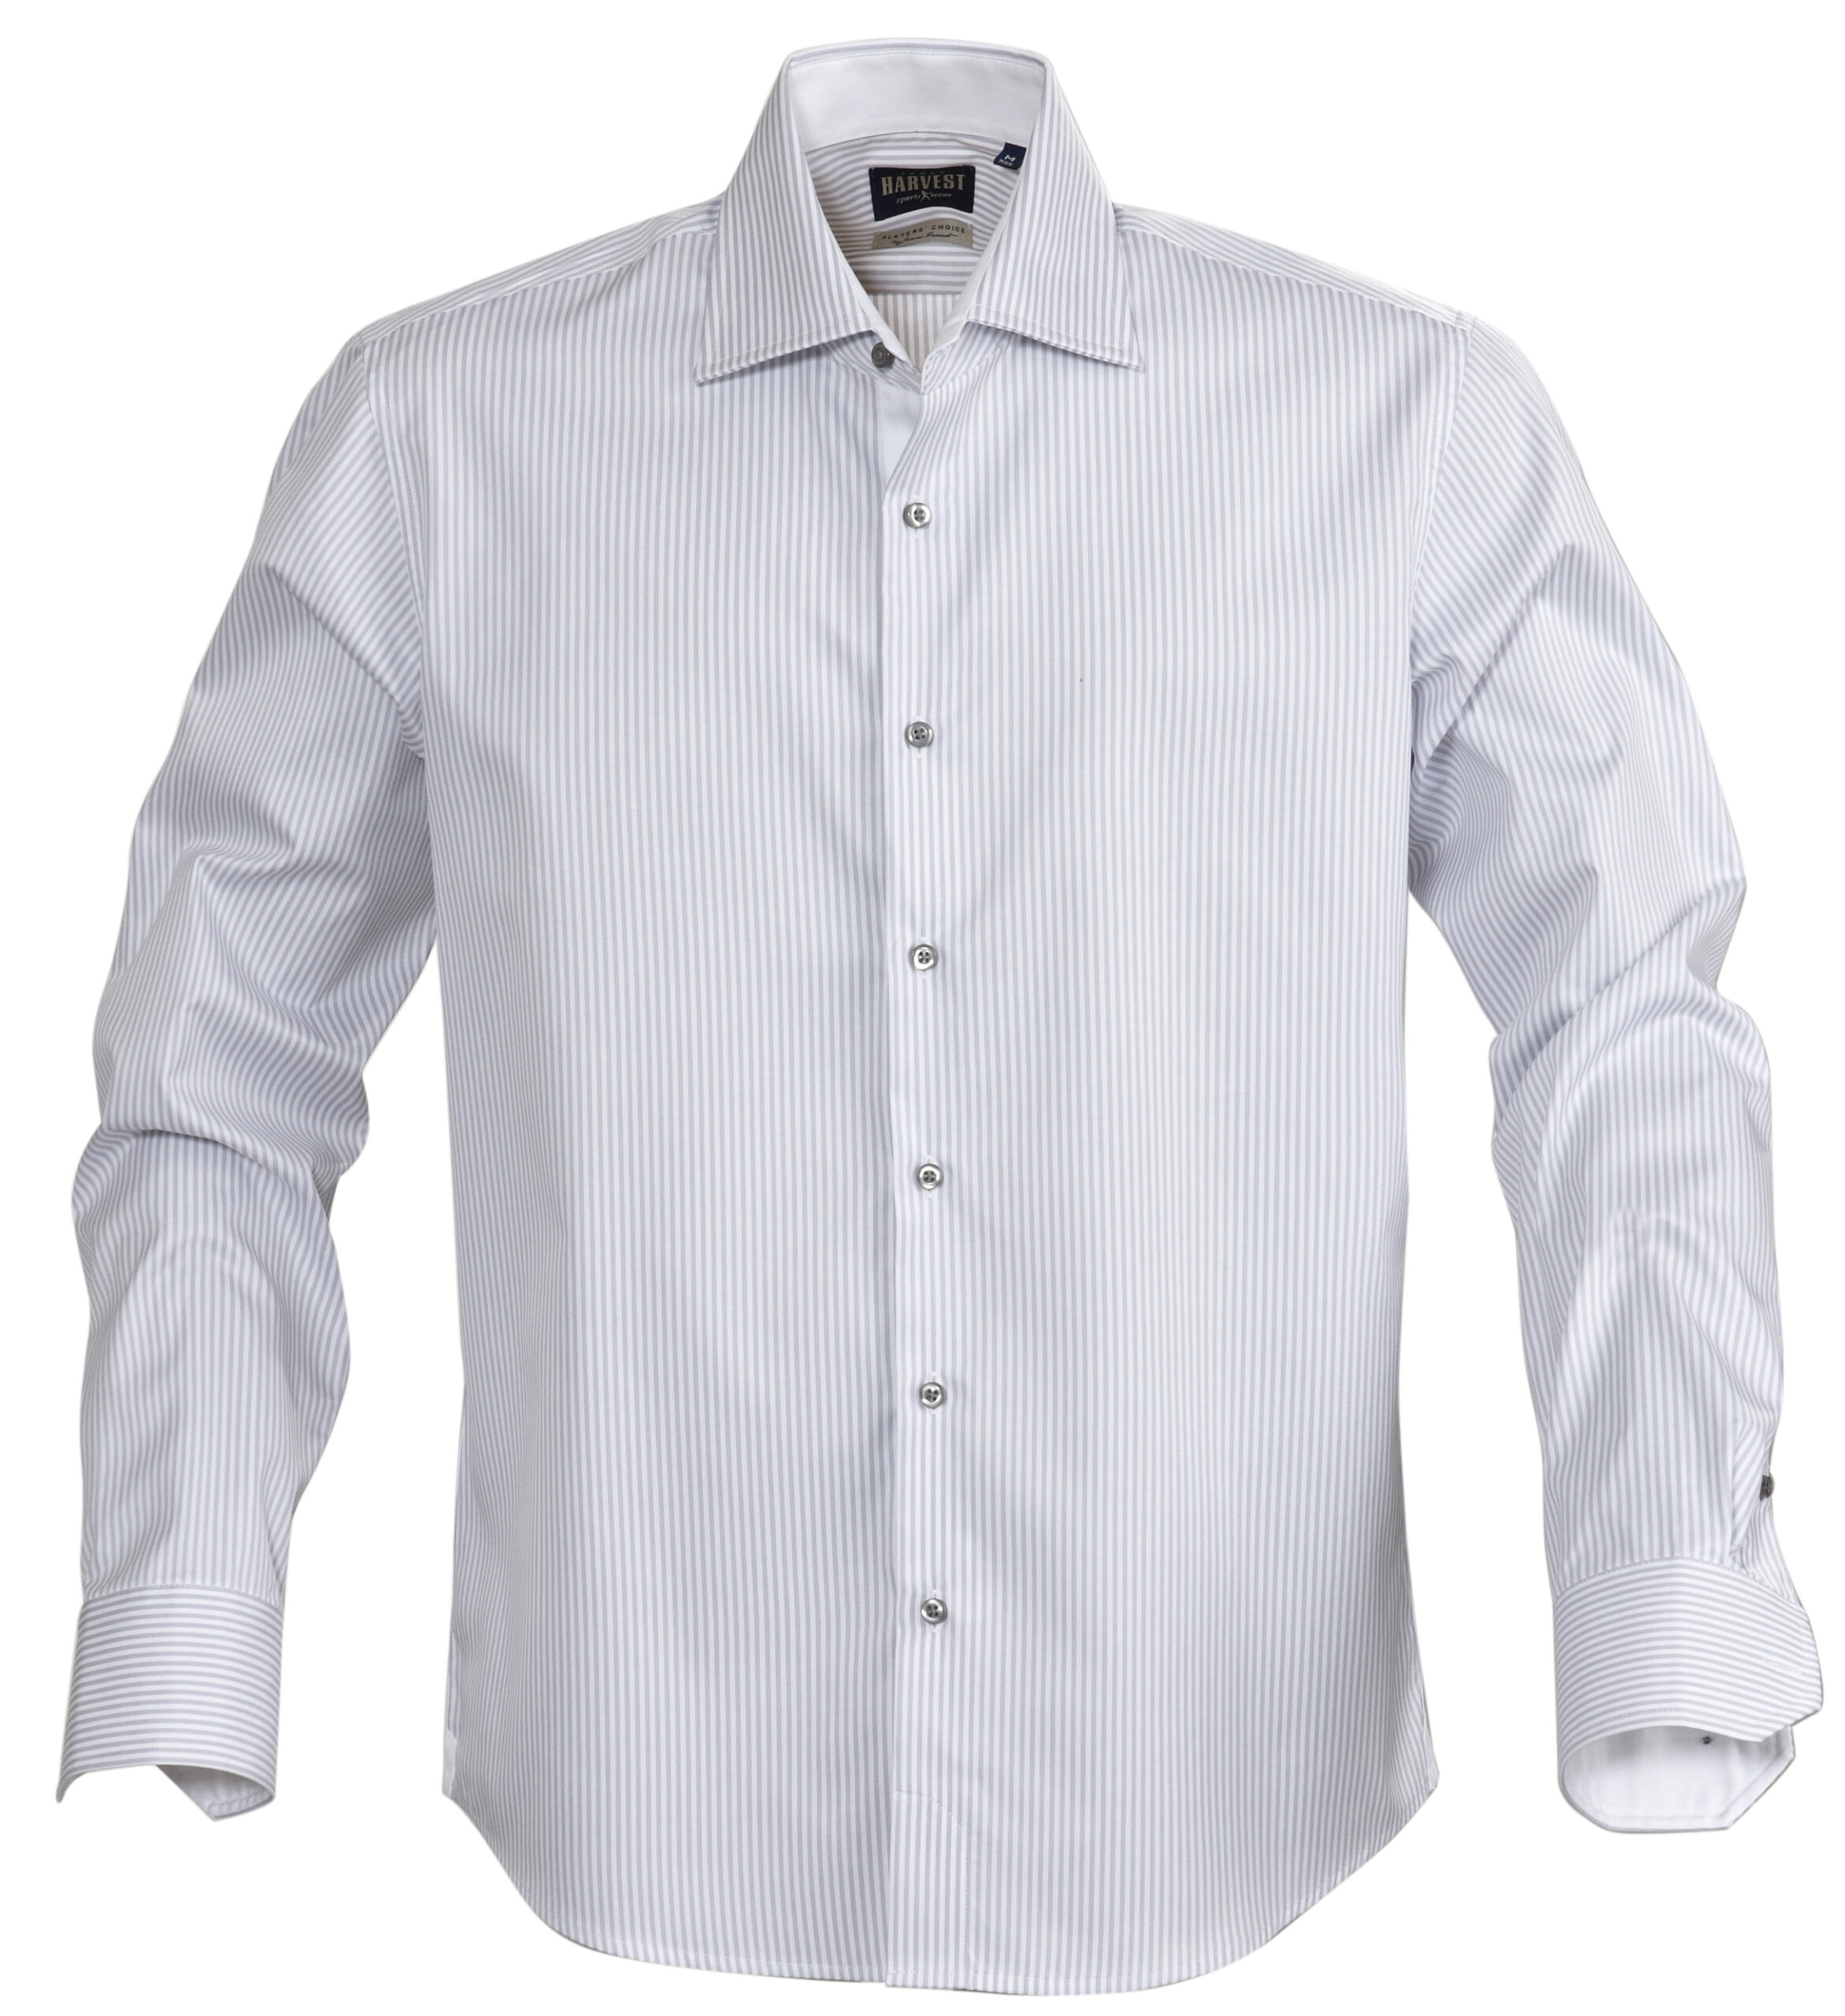 Мужские рубашки производство. James Harvest рубашка. Рубашка мужская el-Risto. Мужская белая рубашка. Мужчина в рубашке.